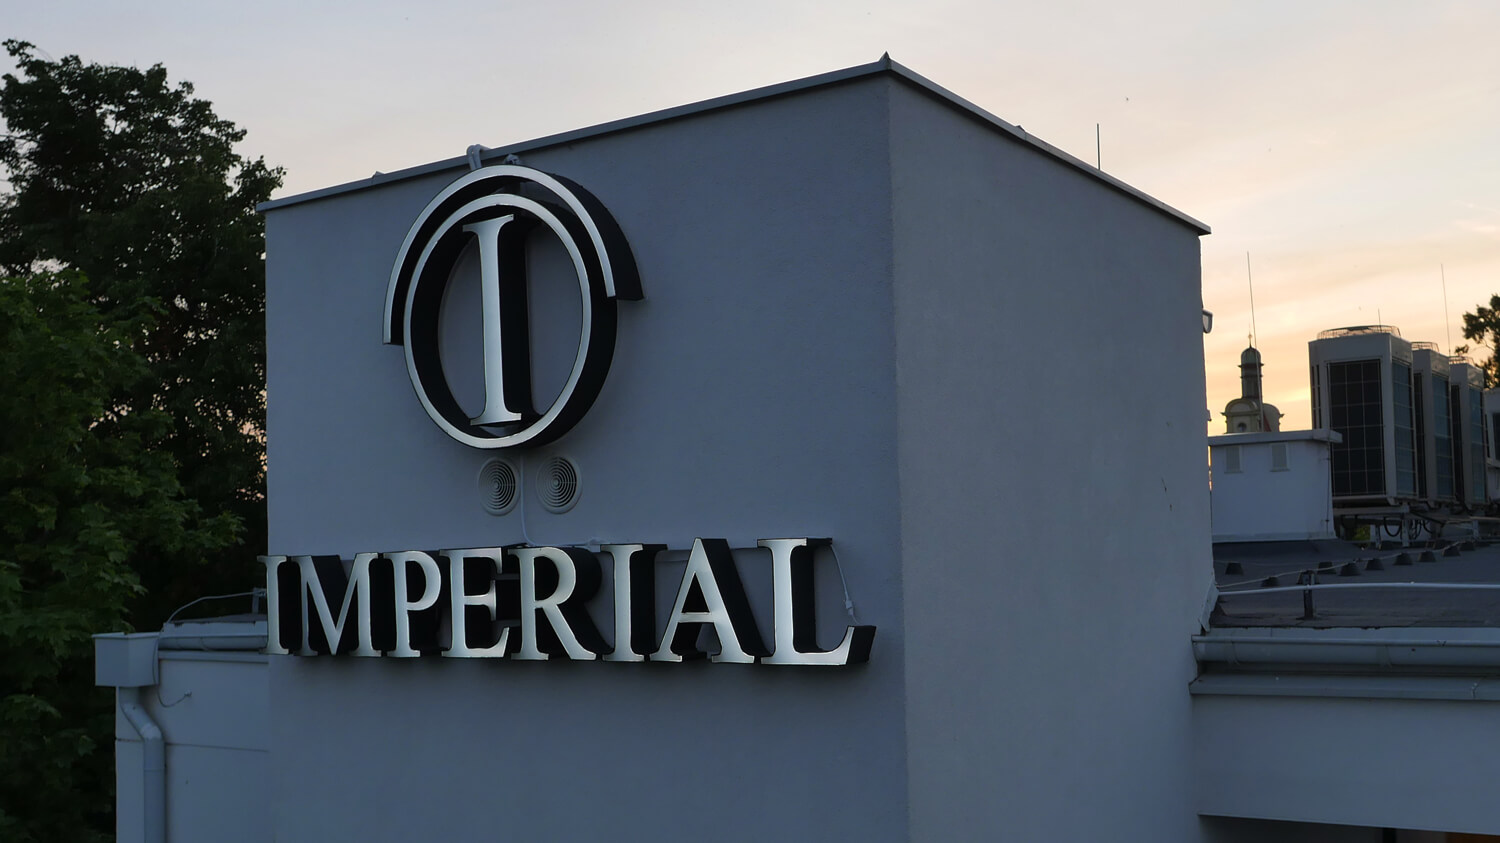 Imperial - Hotel Imperial - scritta spaziale illuminata posta sul muro